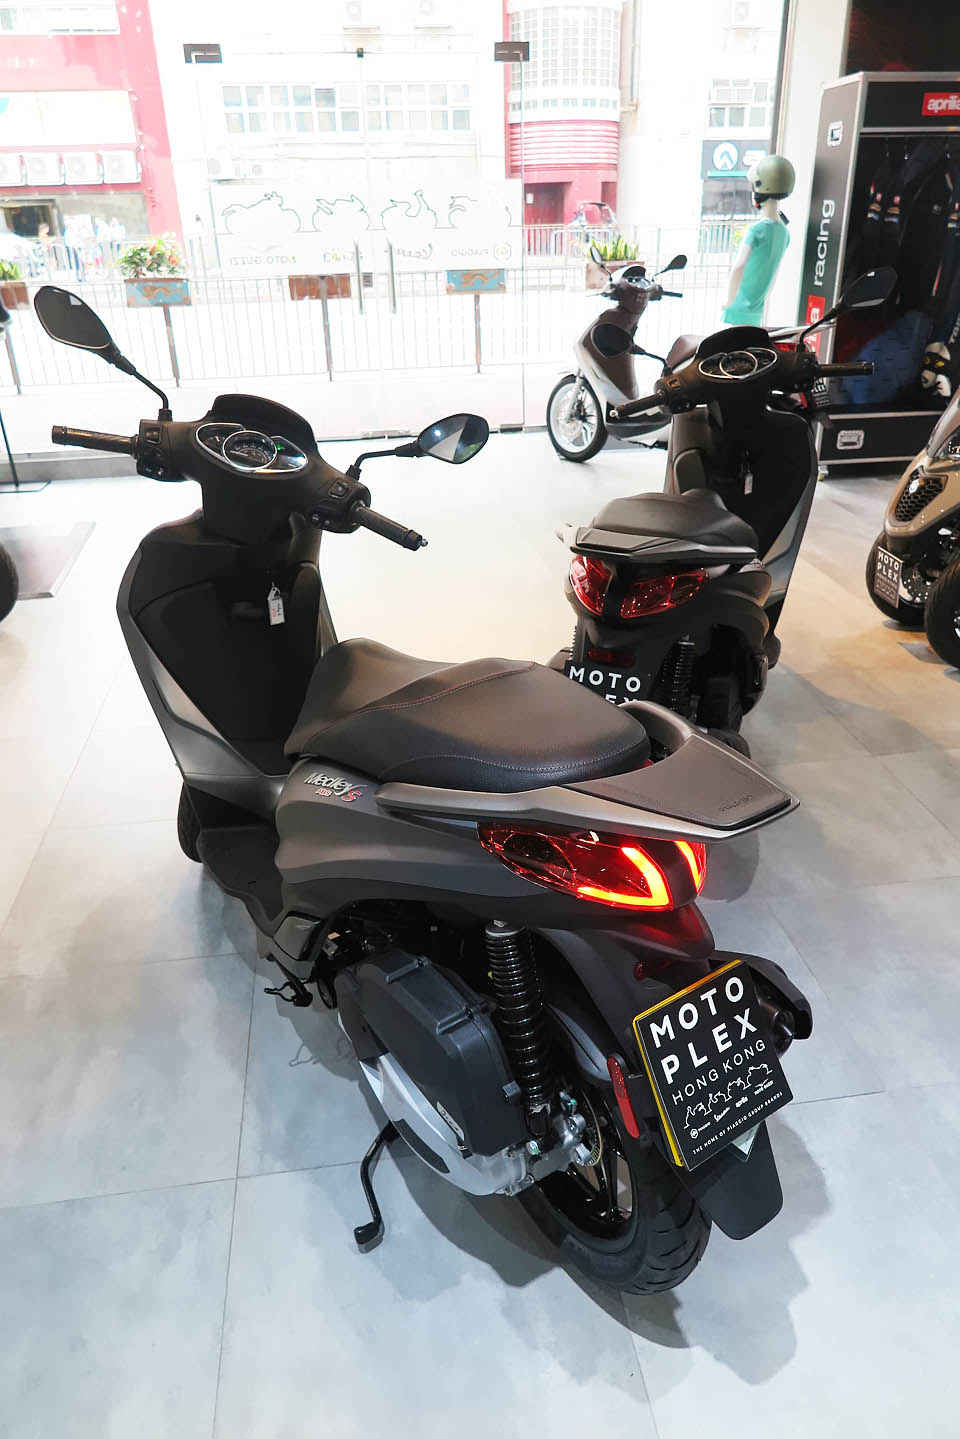 2019 Piaggio Medley S 150 ABS